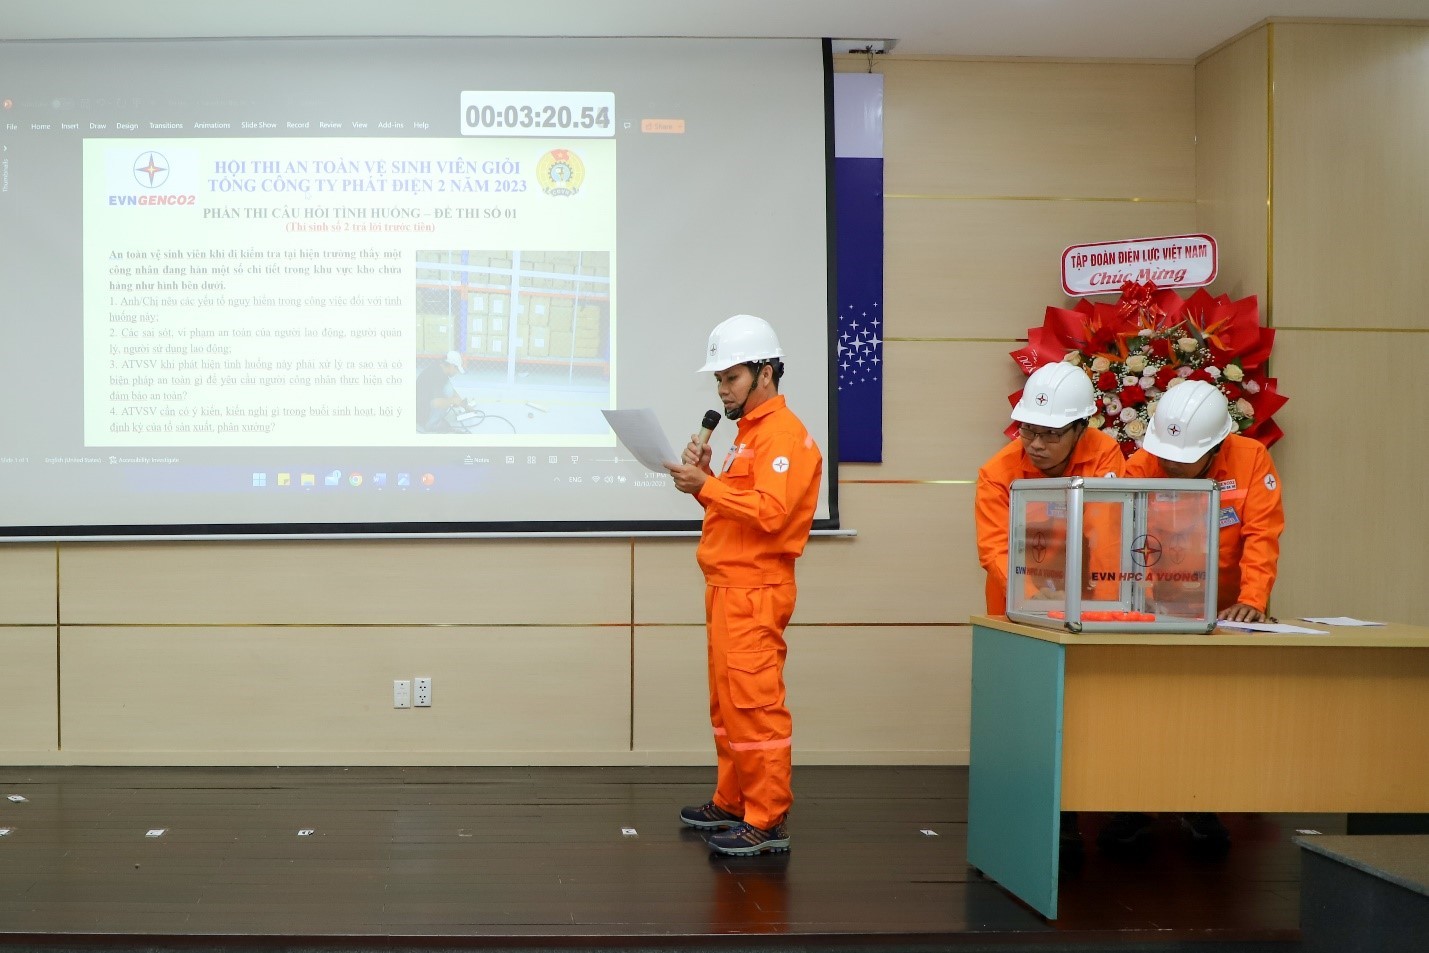 Tổng công ty Phát điện 2 trao giải hội thi An toàn vệ sinh viên giỏi lần thứ 2